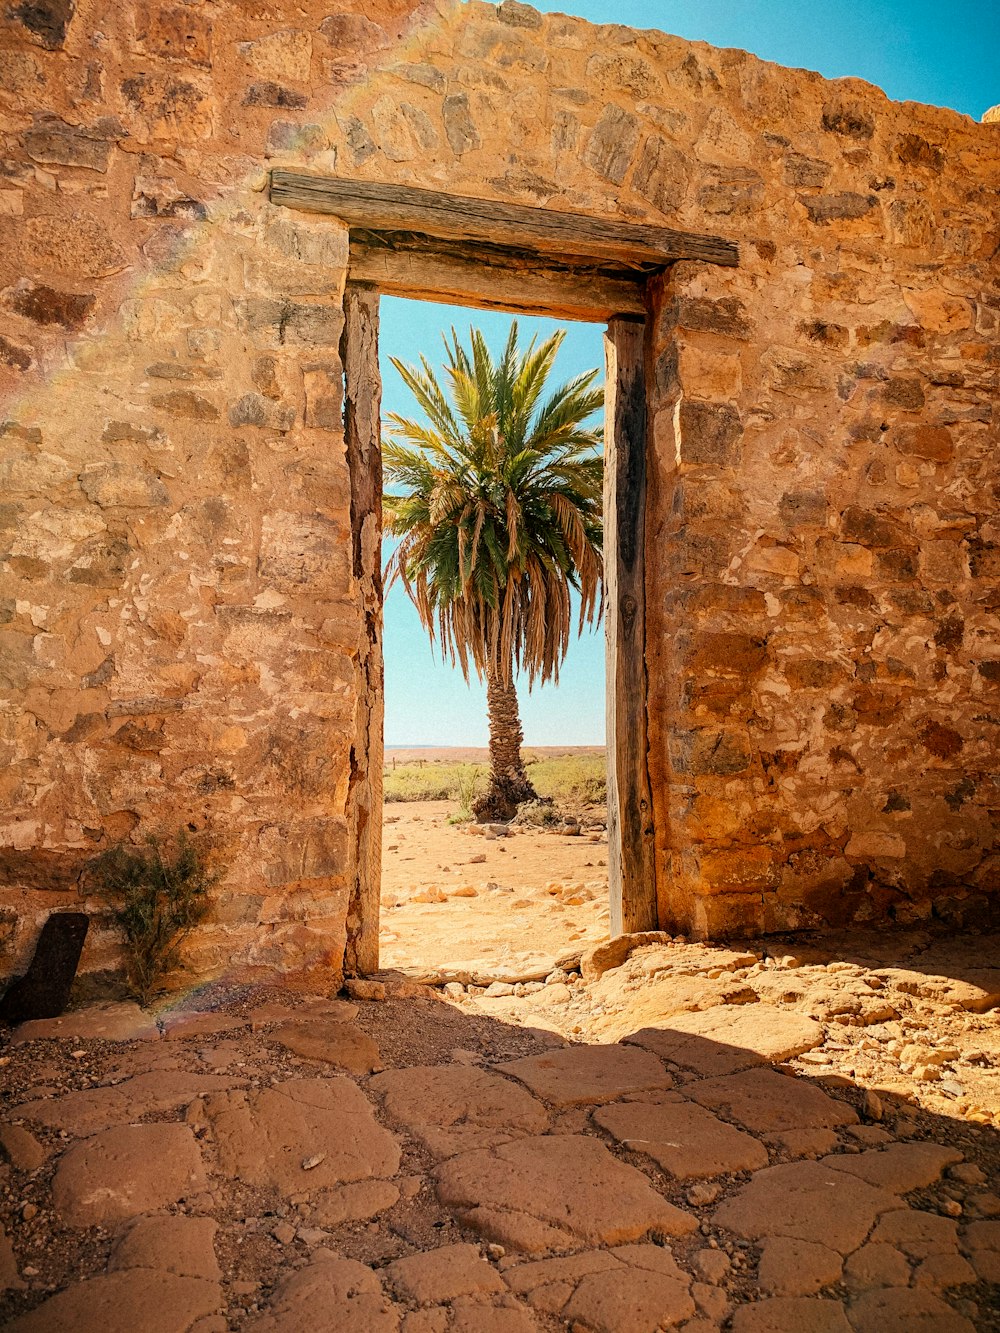 a palm tree is seen through an open door